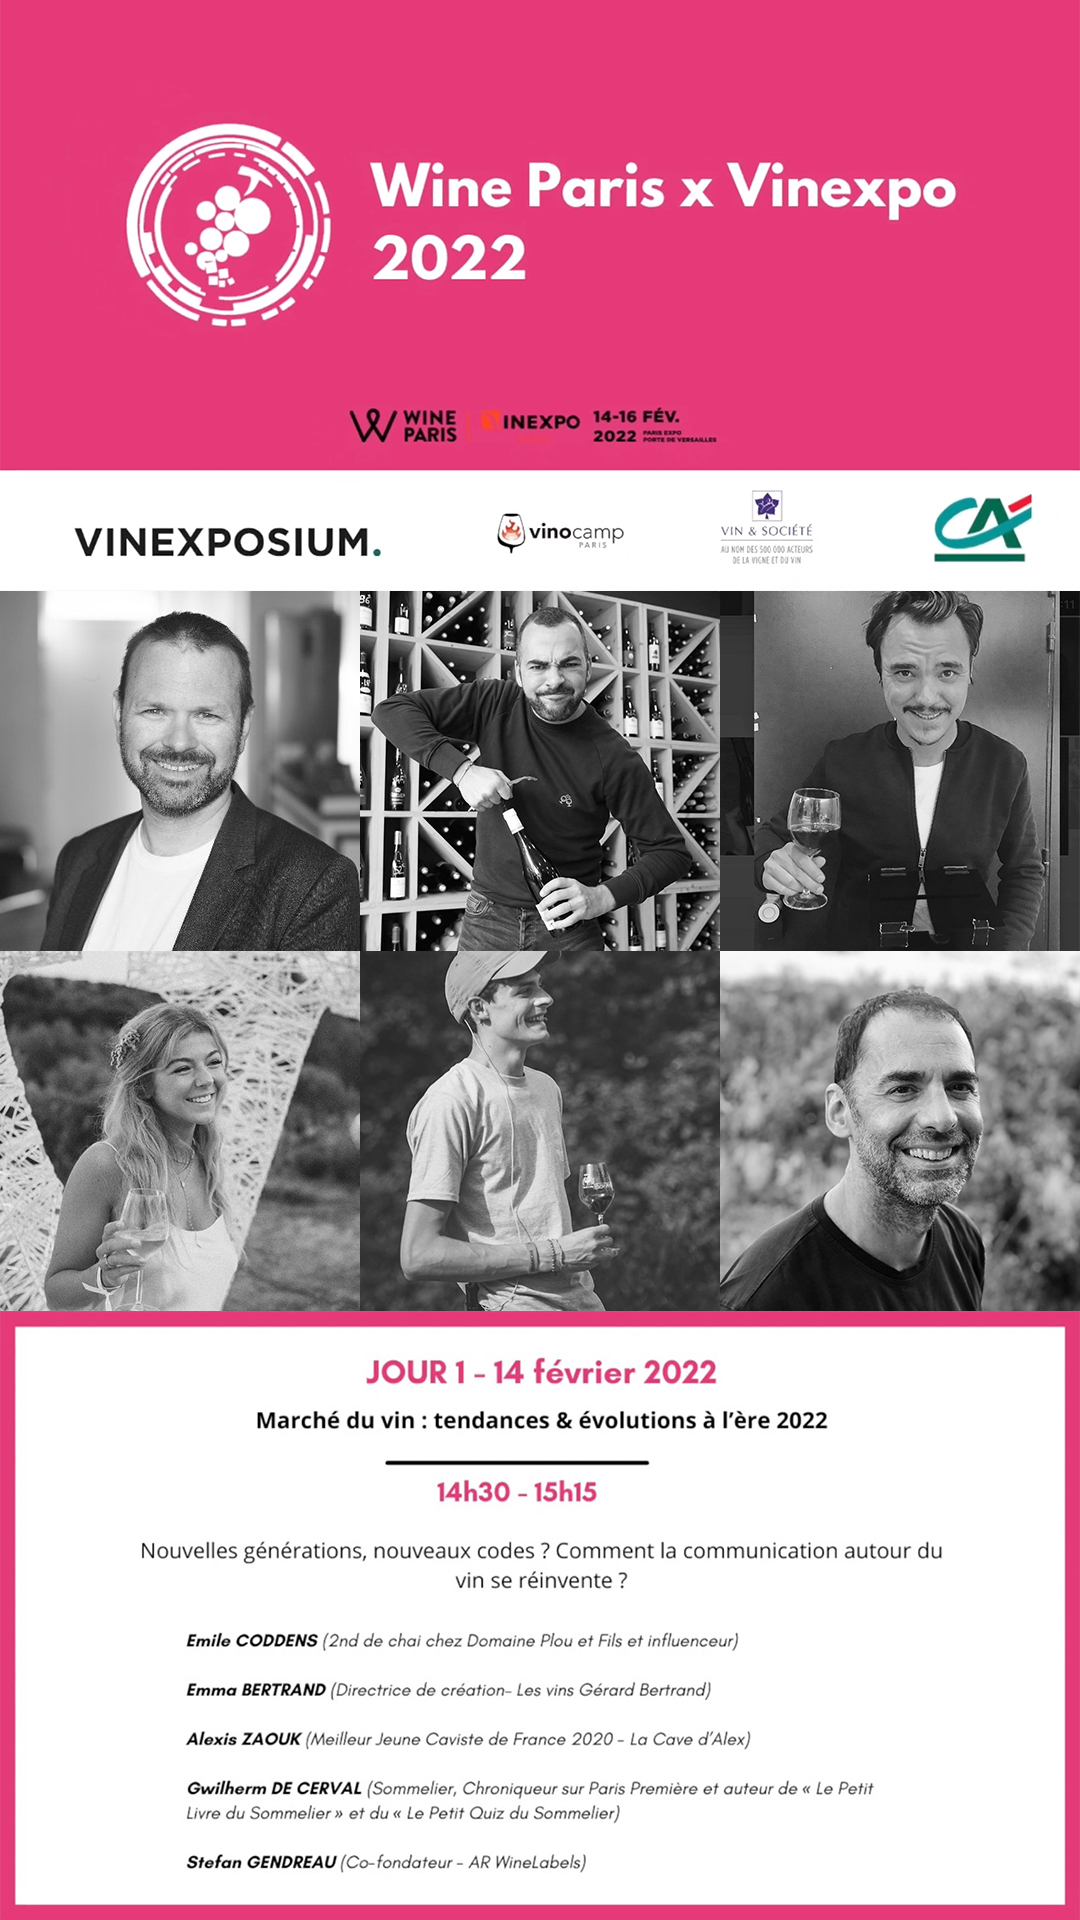 WineParis 2022 Conférence "Nouvelles générations, nouveaux codes ?  Comment la communication autour du vin se réinvente ?"